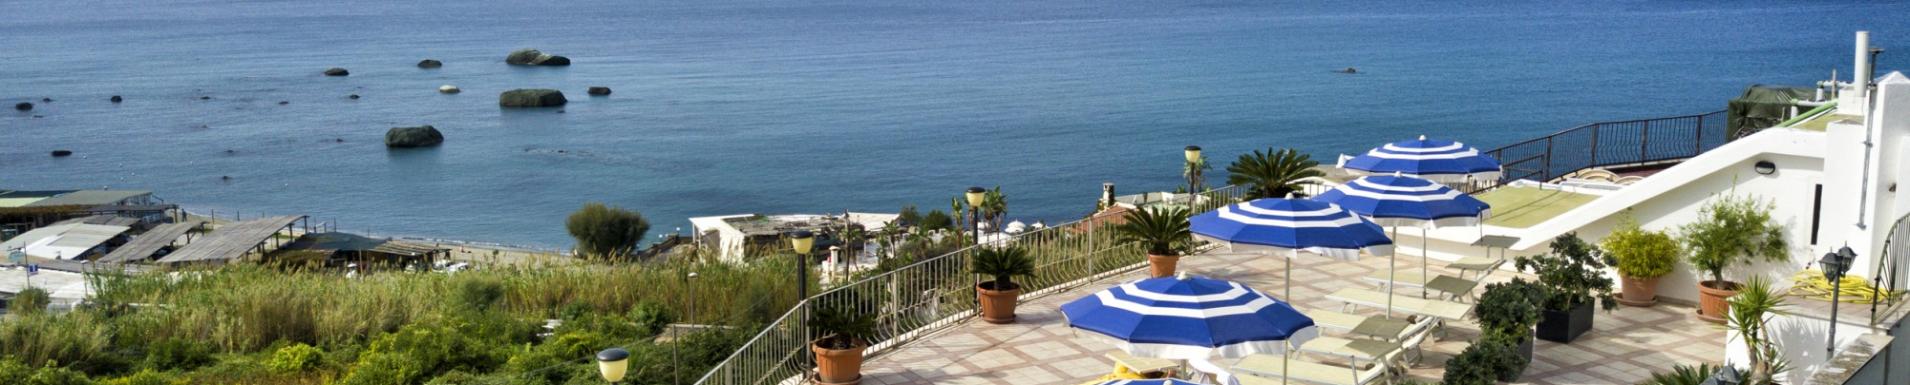 Juni auf Ischia: Die entspannende Auszeit, die du verdienst!